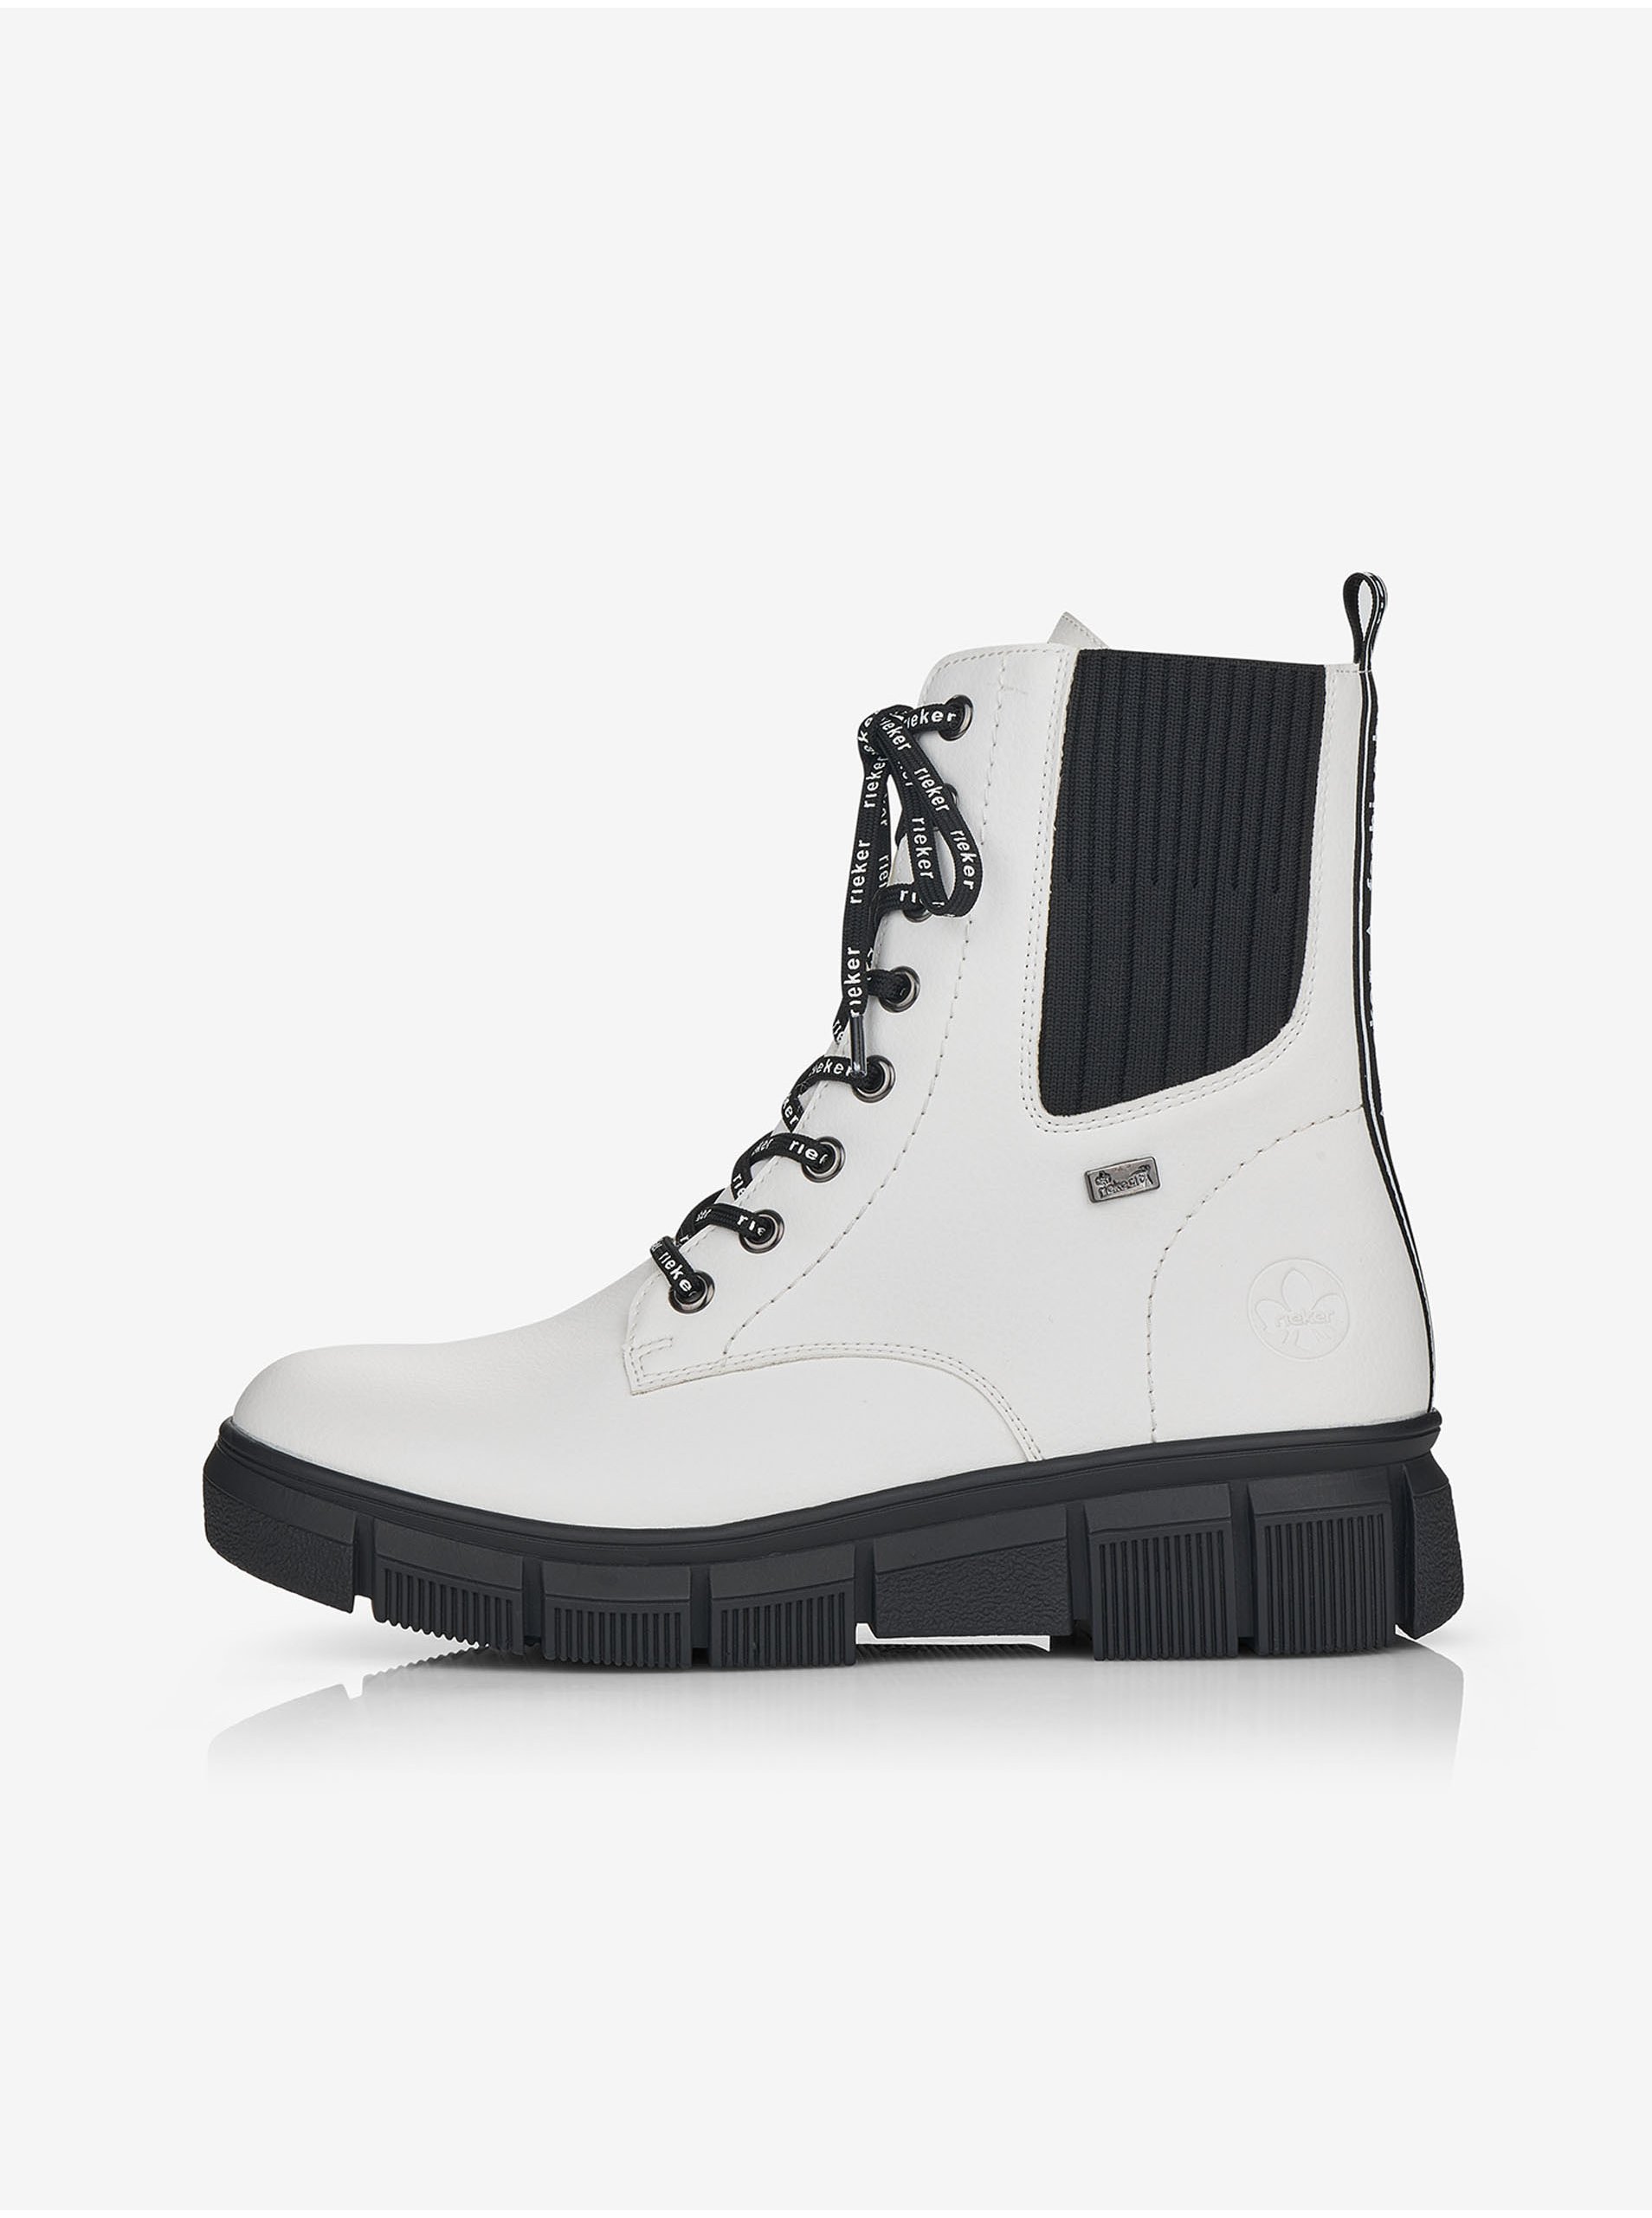 E-shop Černo-bílé dámské zateplené kotníkové boty Rieker